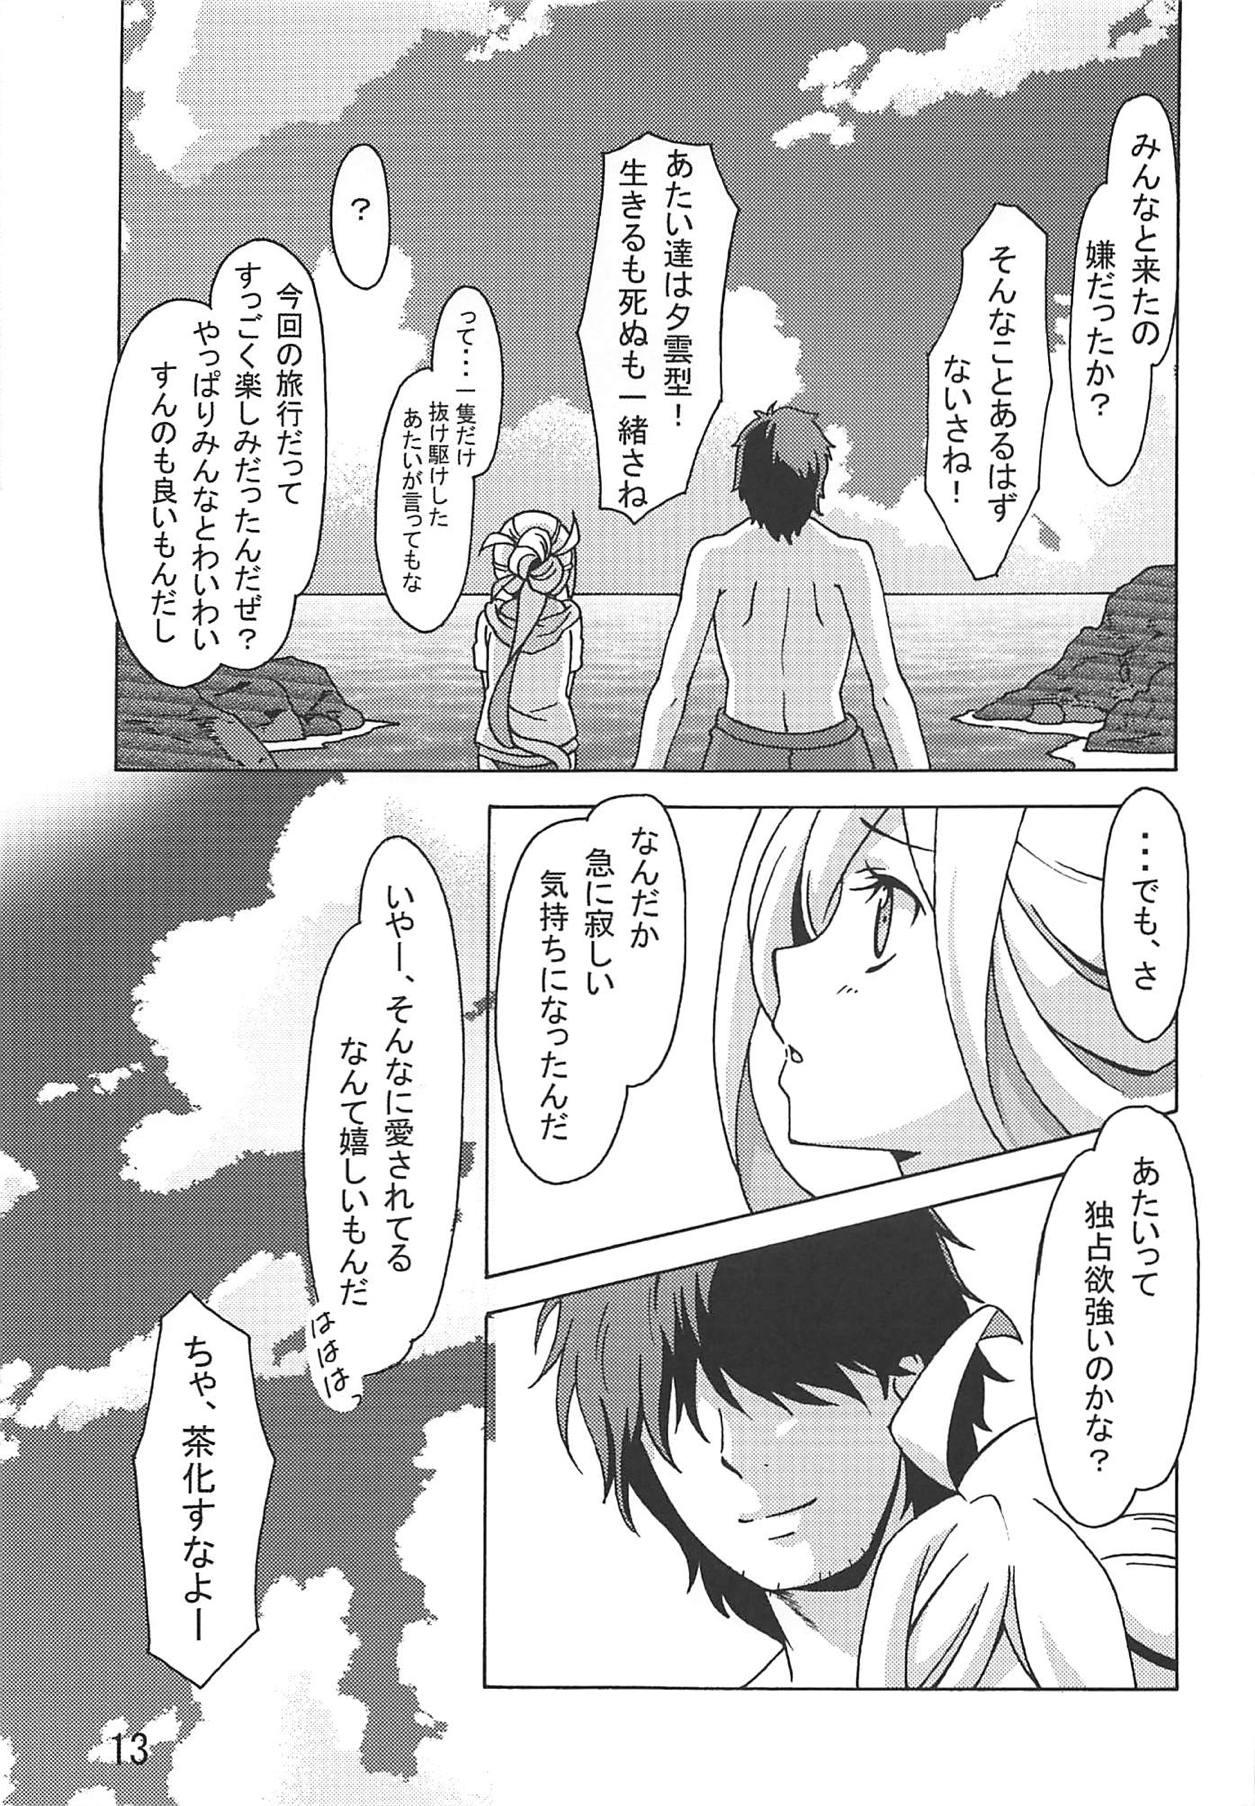 Moms Asashimo no Shinkon Ryokou e Ikukkyanai ne! - Kantai collection Thief - Page 12